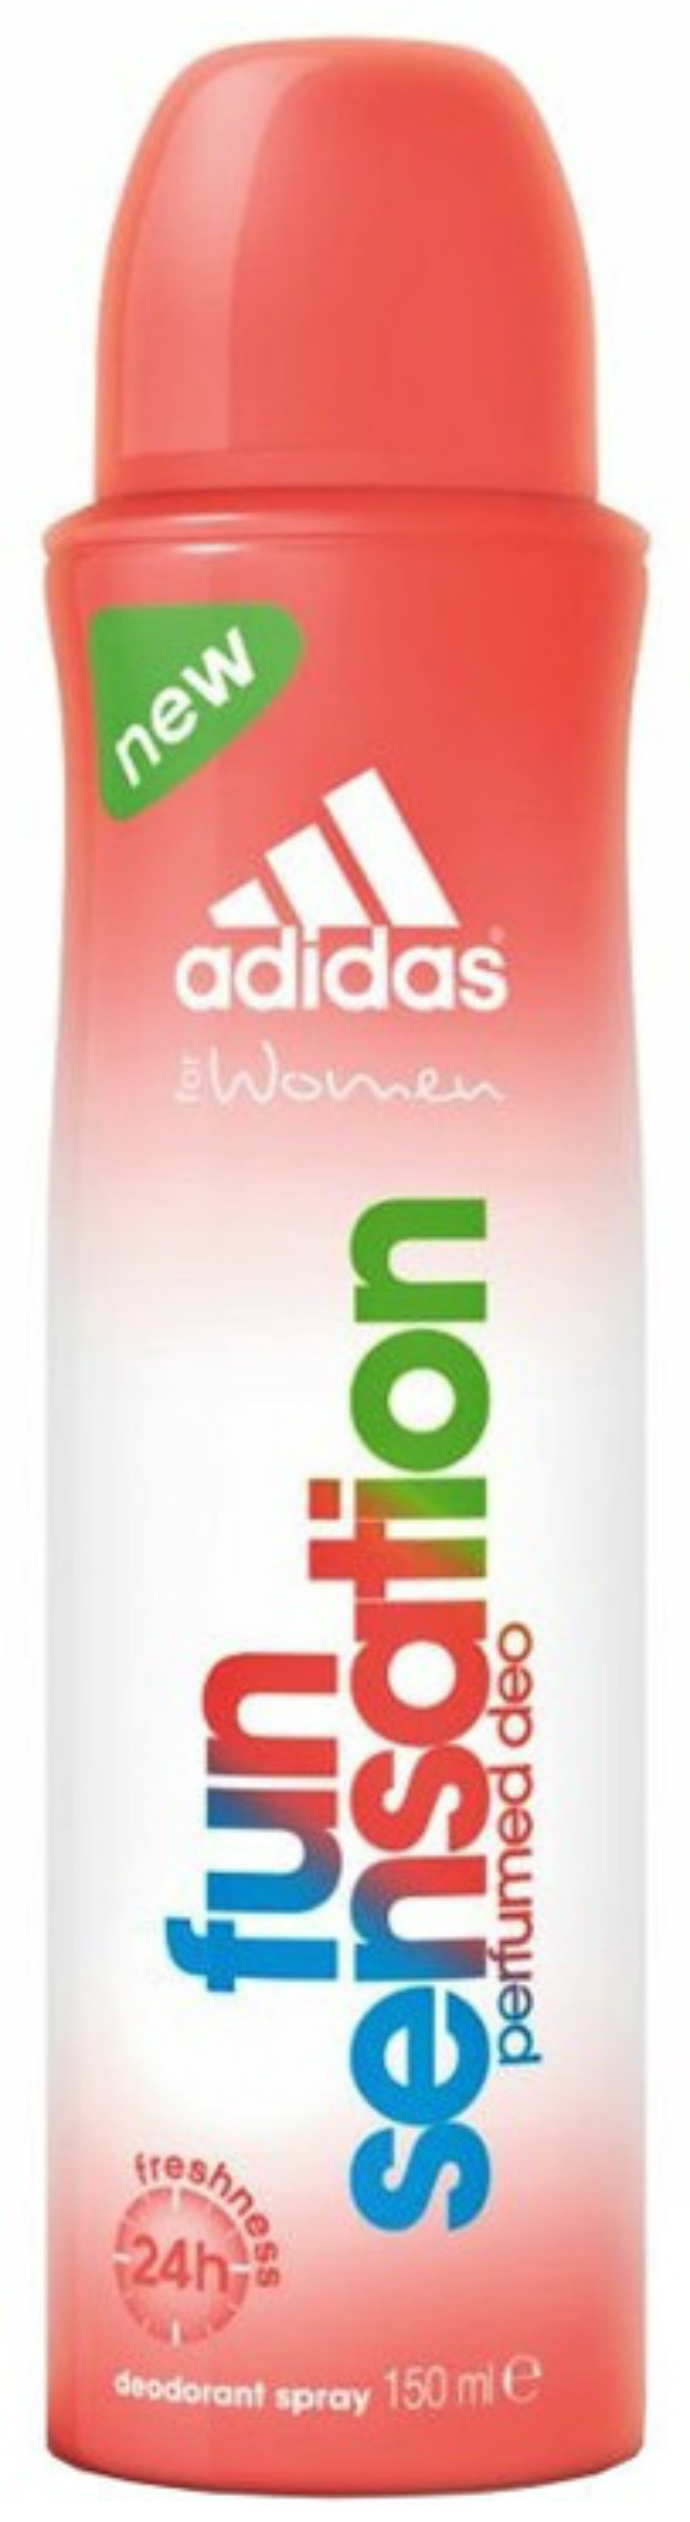 adidas Adidas Fun Sensation Deodorant Body Spray For Women 150ml (MOS)